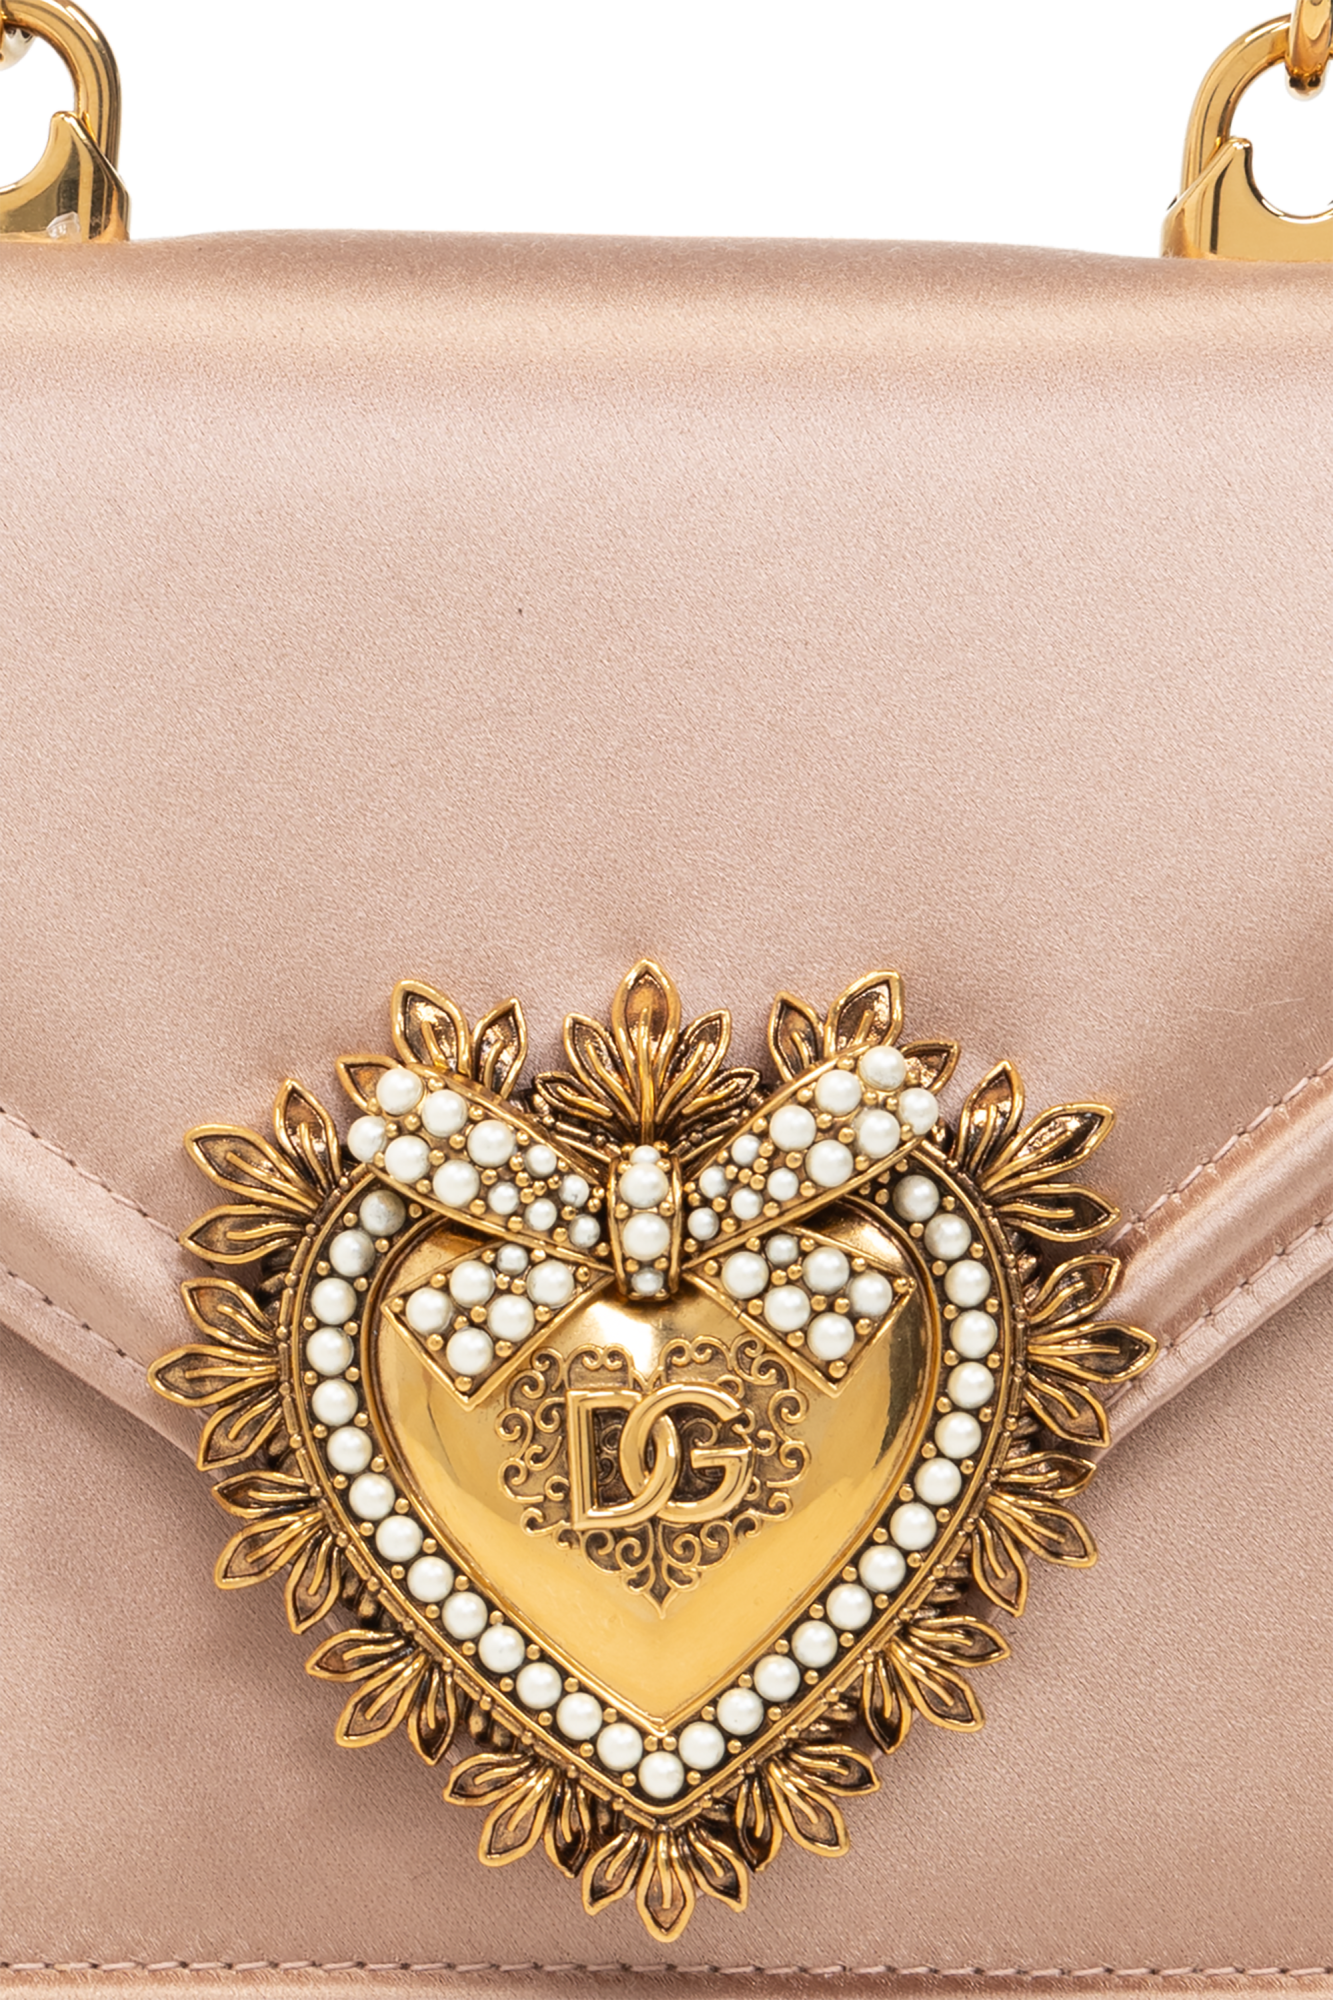 Dolce & Gabbana Devotion Small shoulder bag